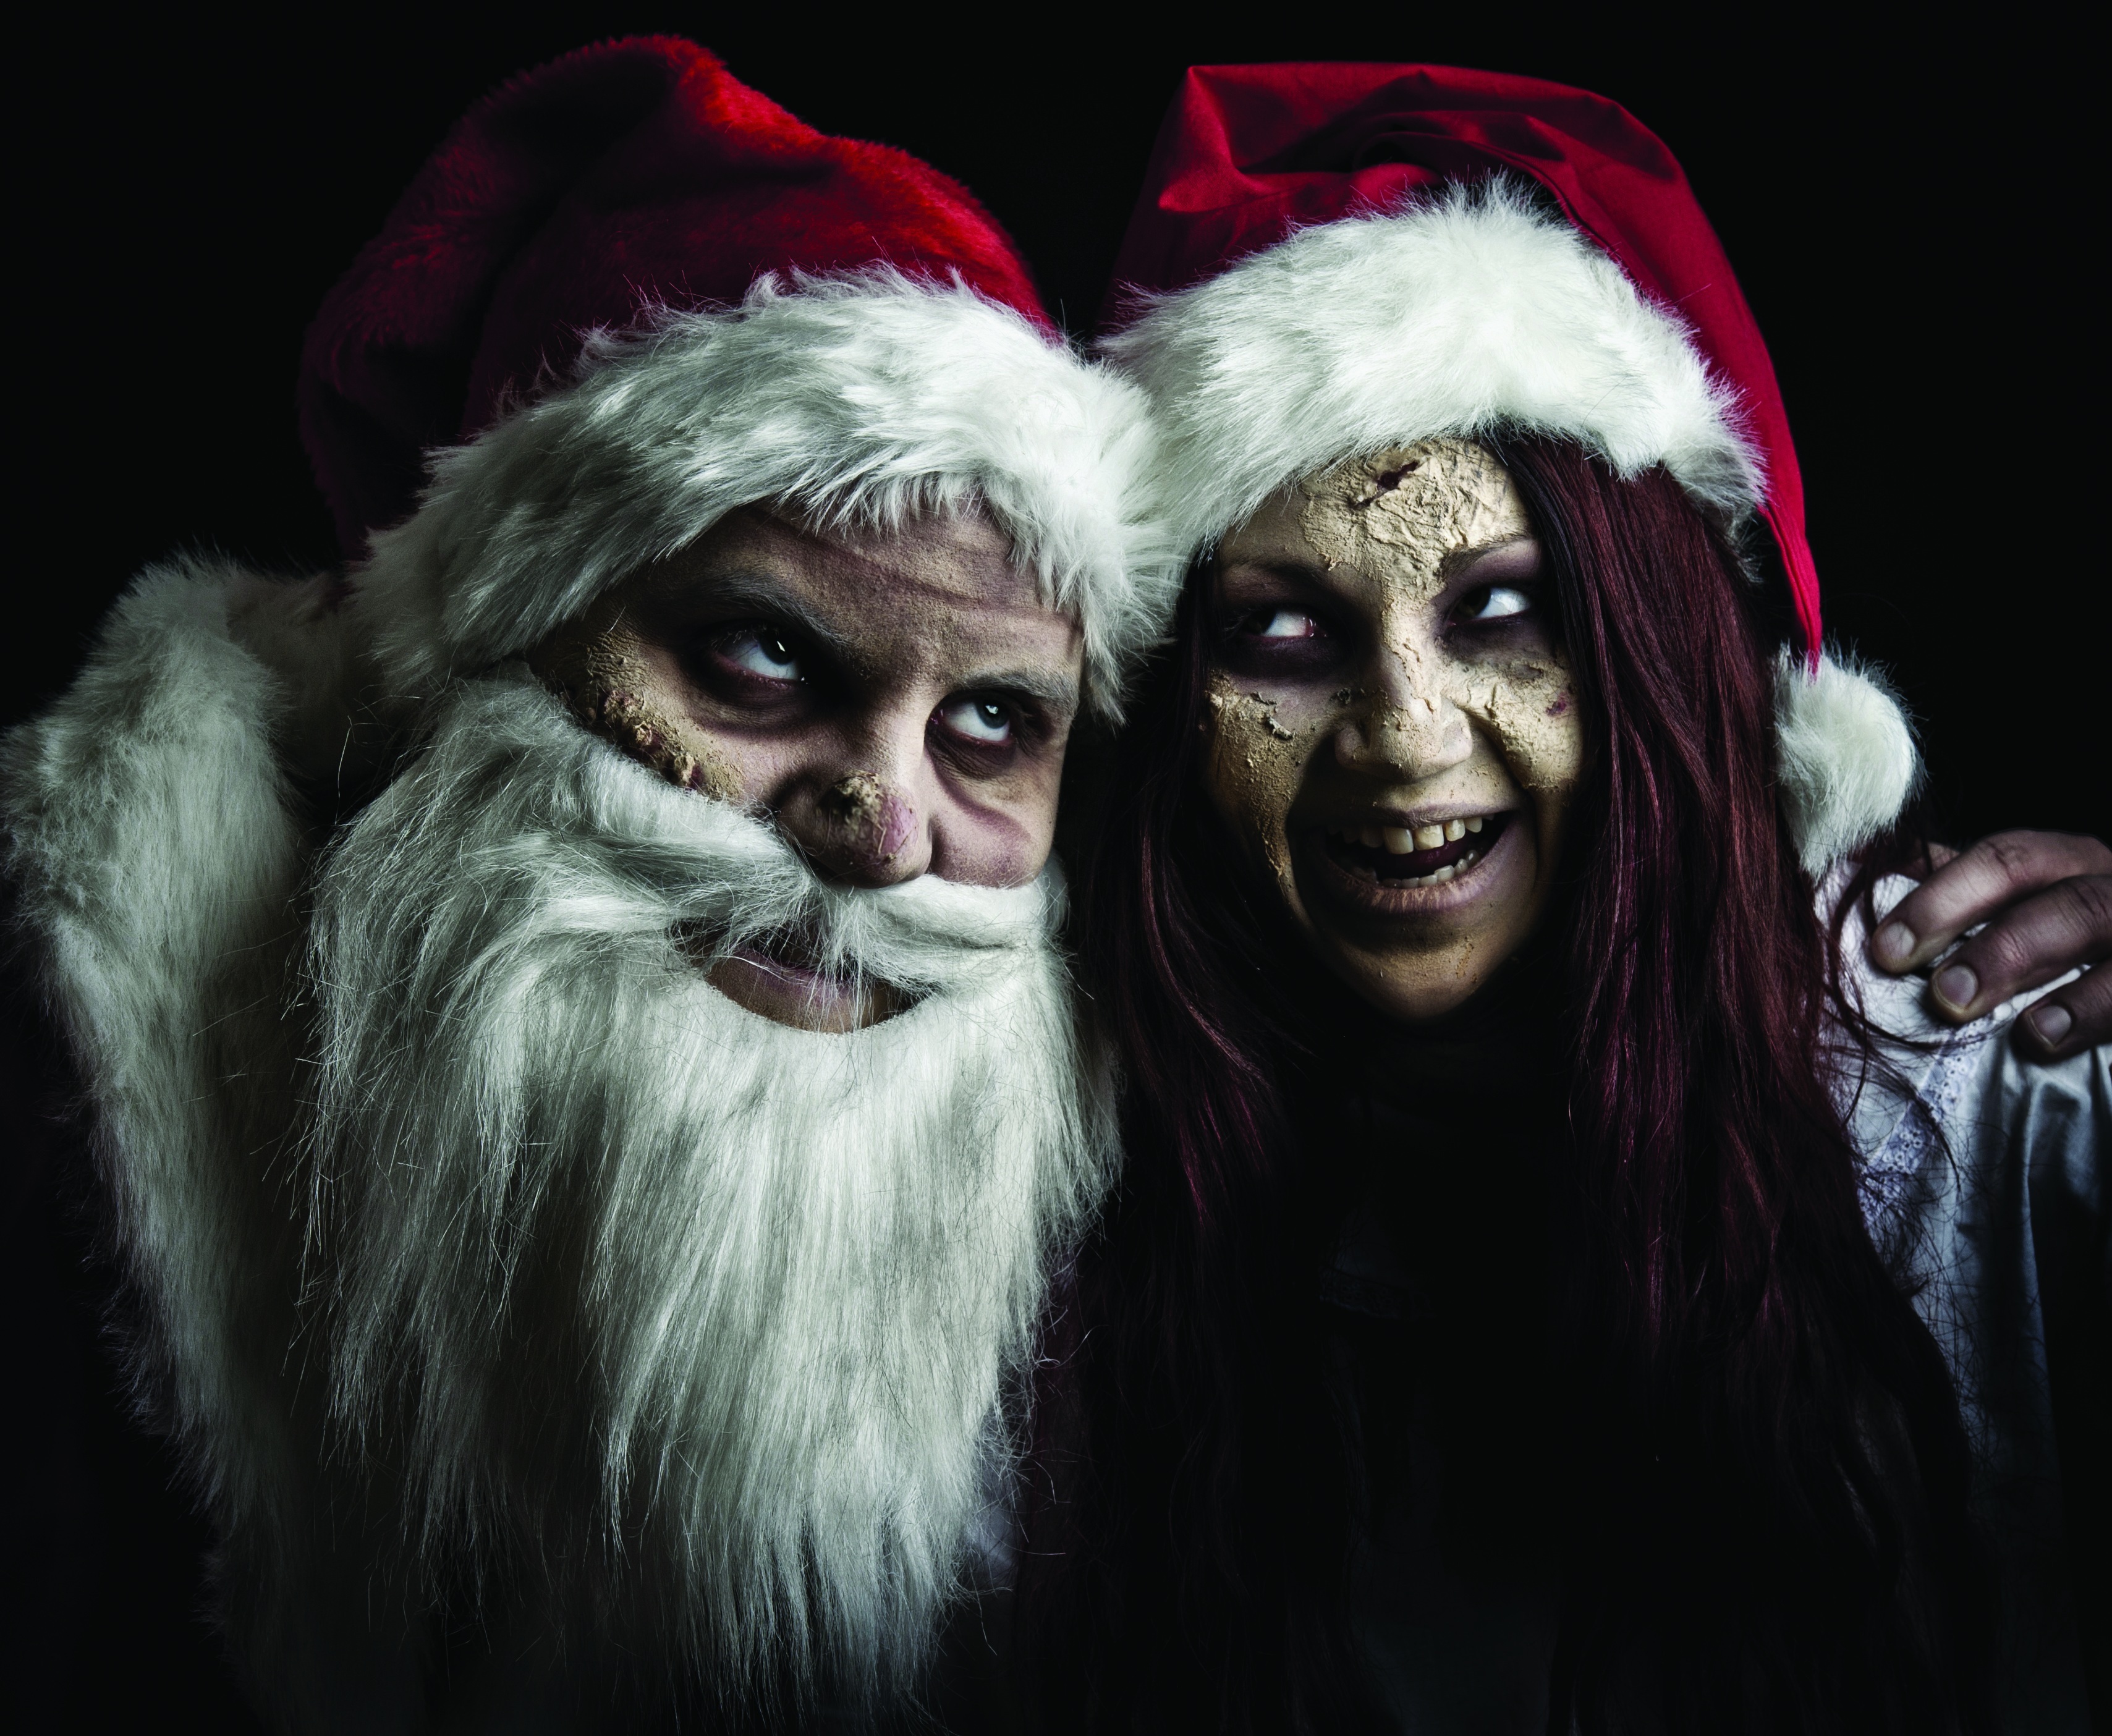 Creepy Santa and Mrs. Claus